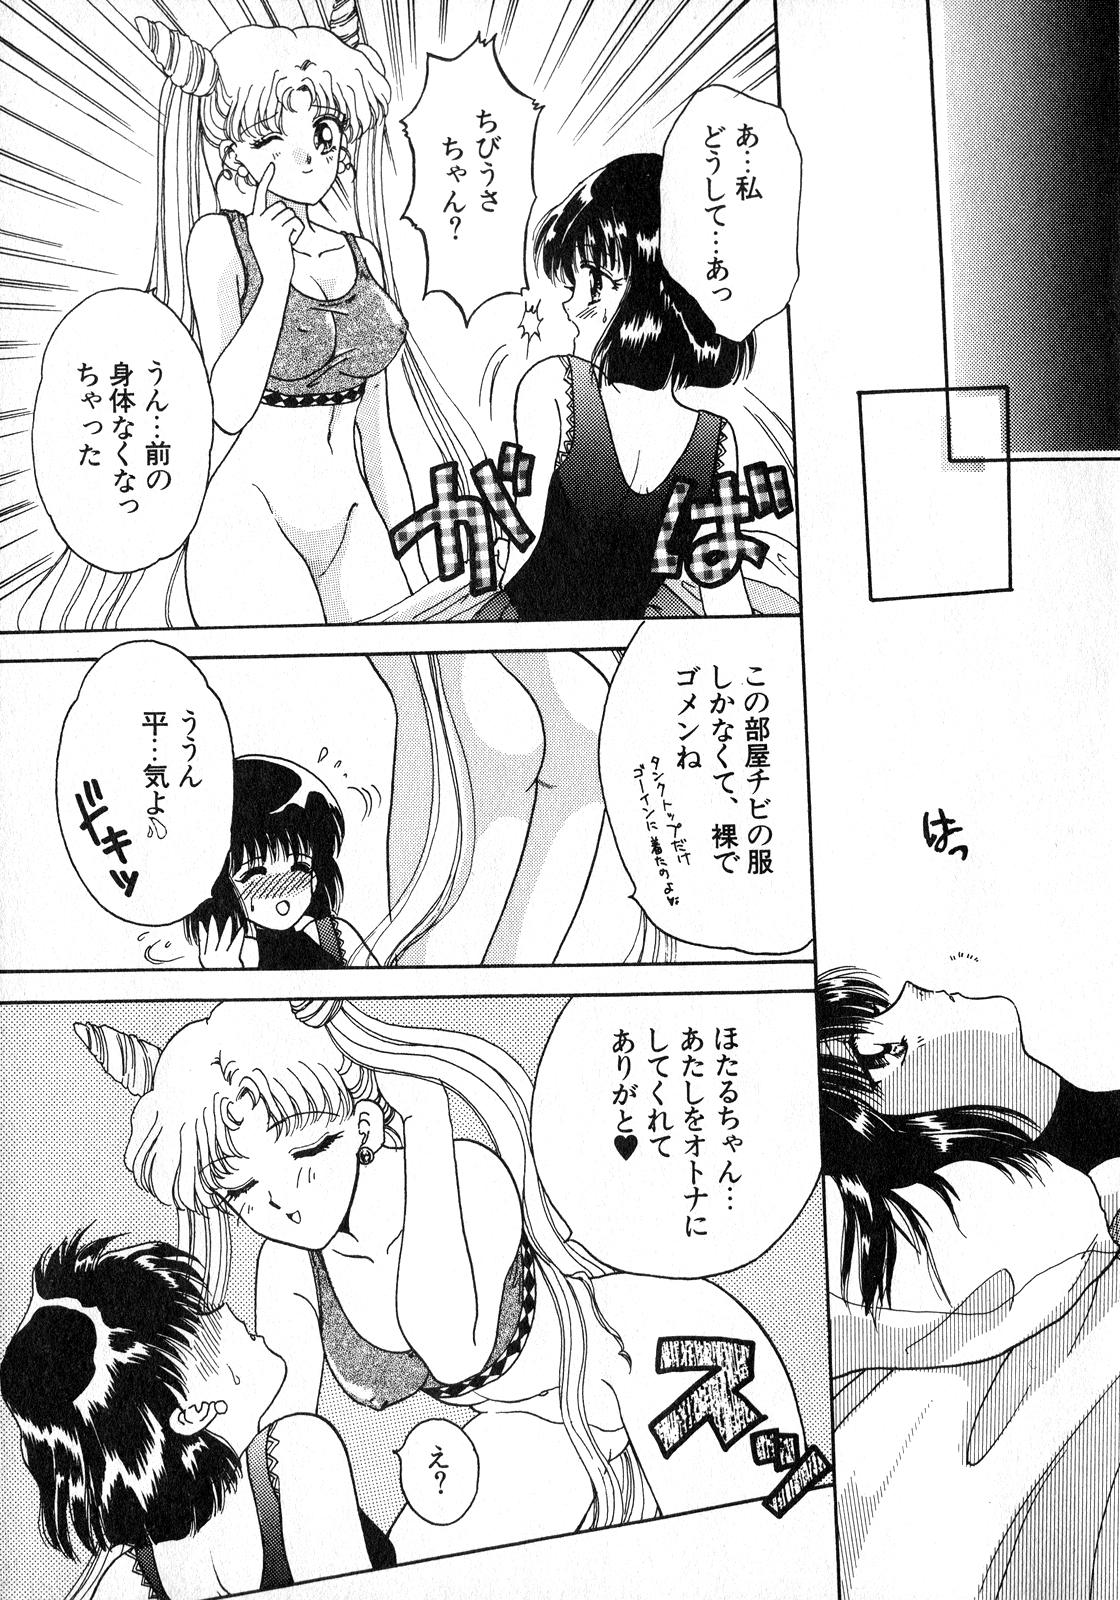 Big Black Dick Lunatic Party 8 - Sailor moon Coed - Page 12